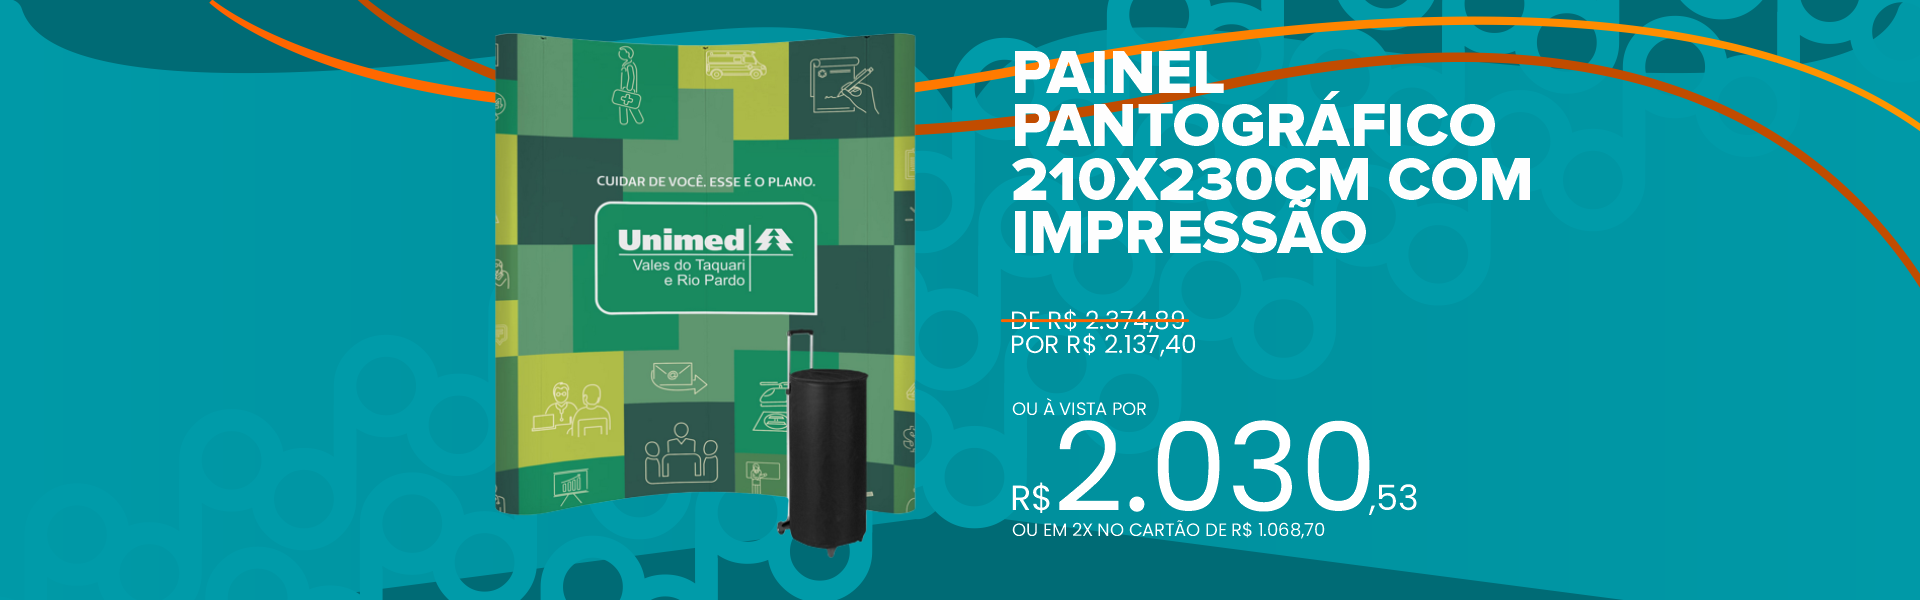 Painel Pantográfico 210X230CM